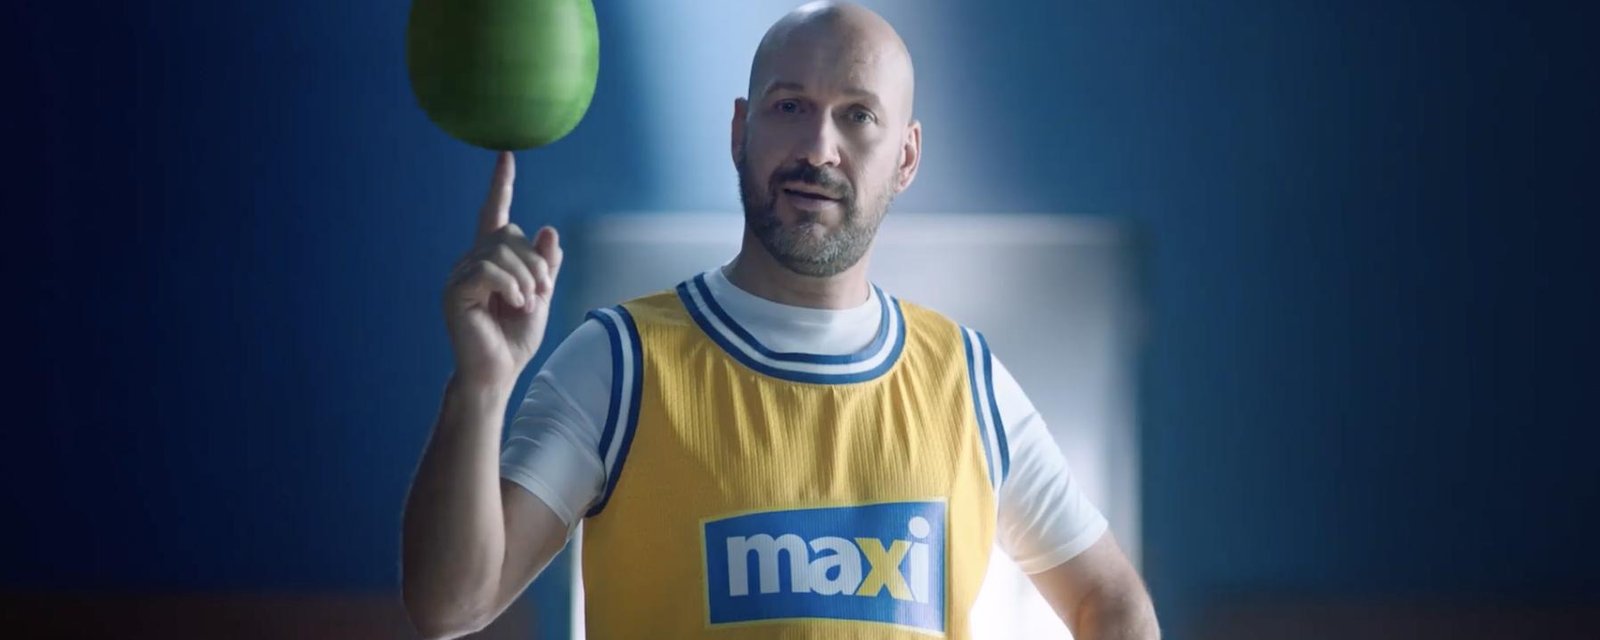 À VOIR: Martin Matte imite Michael Jordan dans la plus récente pub de Maxi